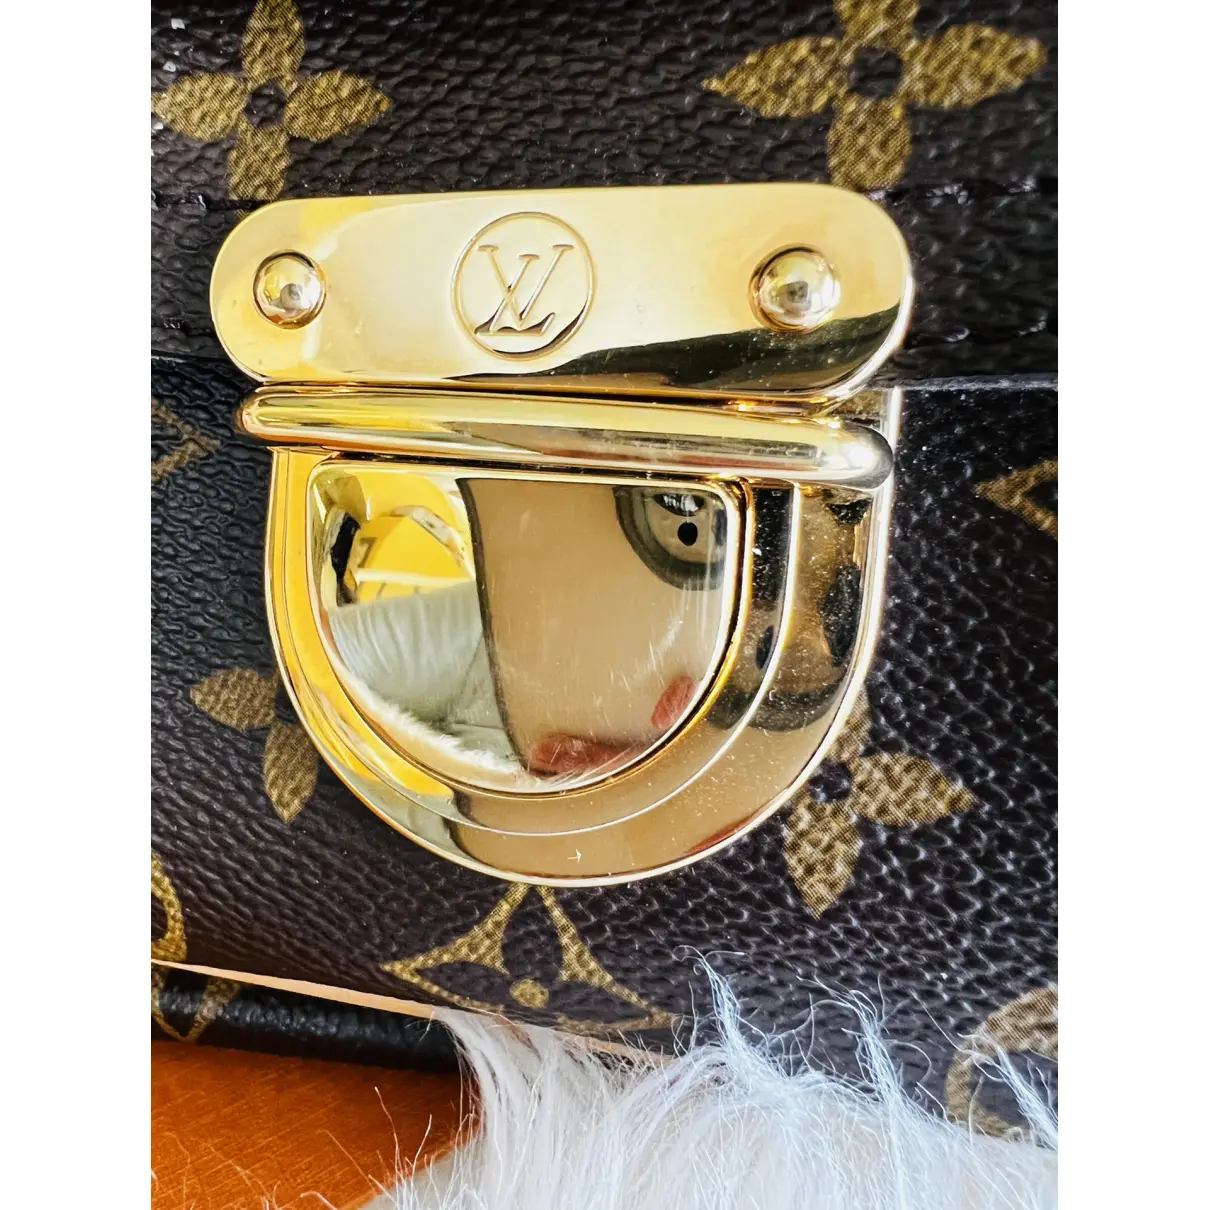 Hudson cloth handbag Louis Vuitton